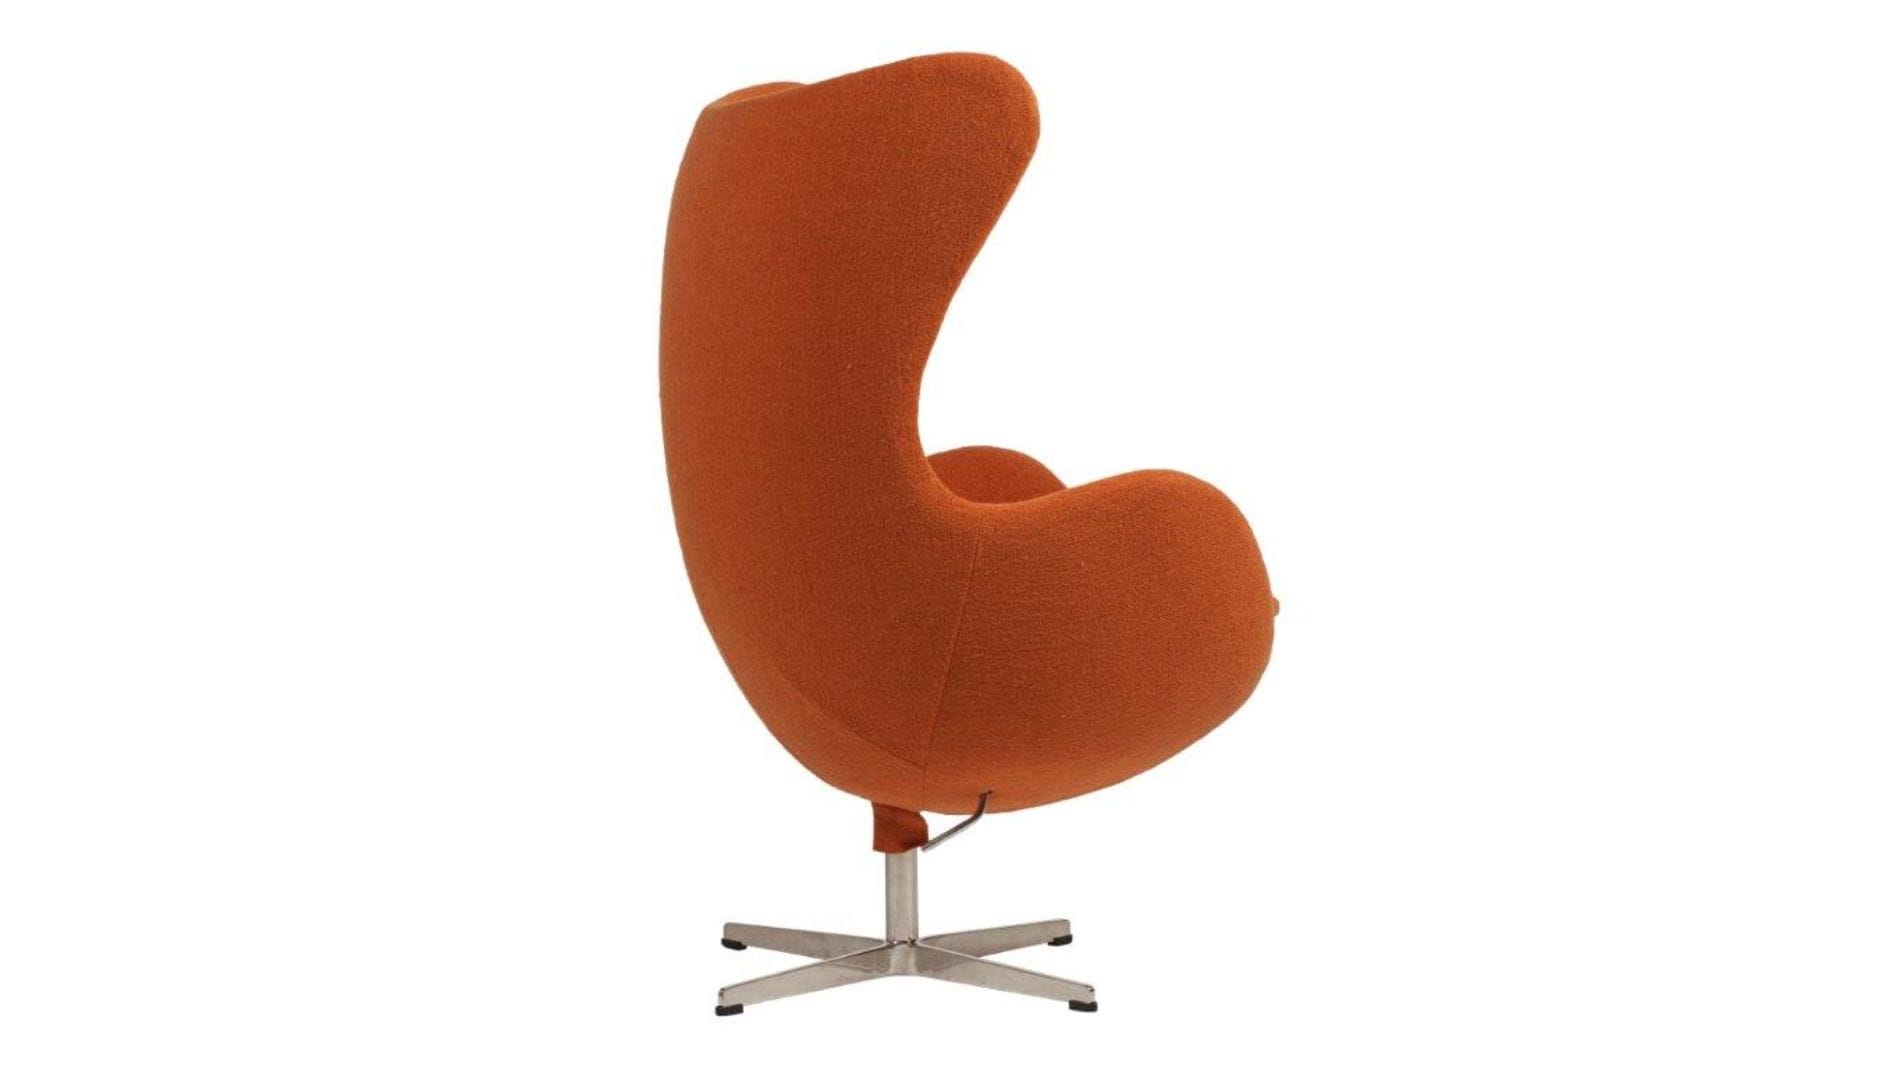 Кресло Egg Chair Оранжевое 100% Шерсть М